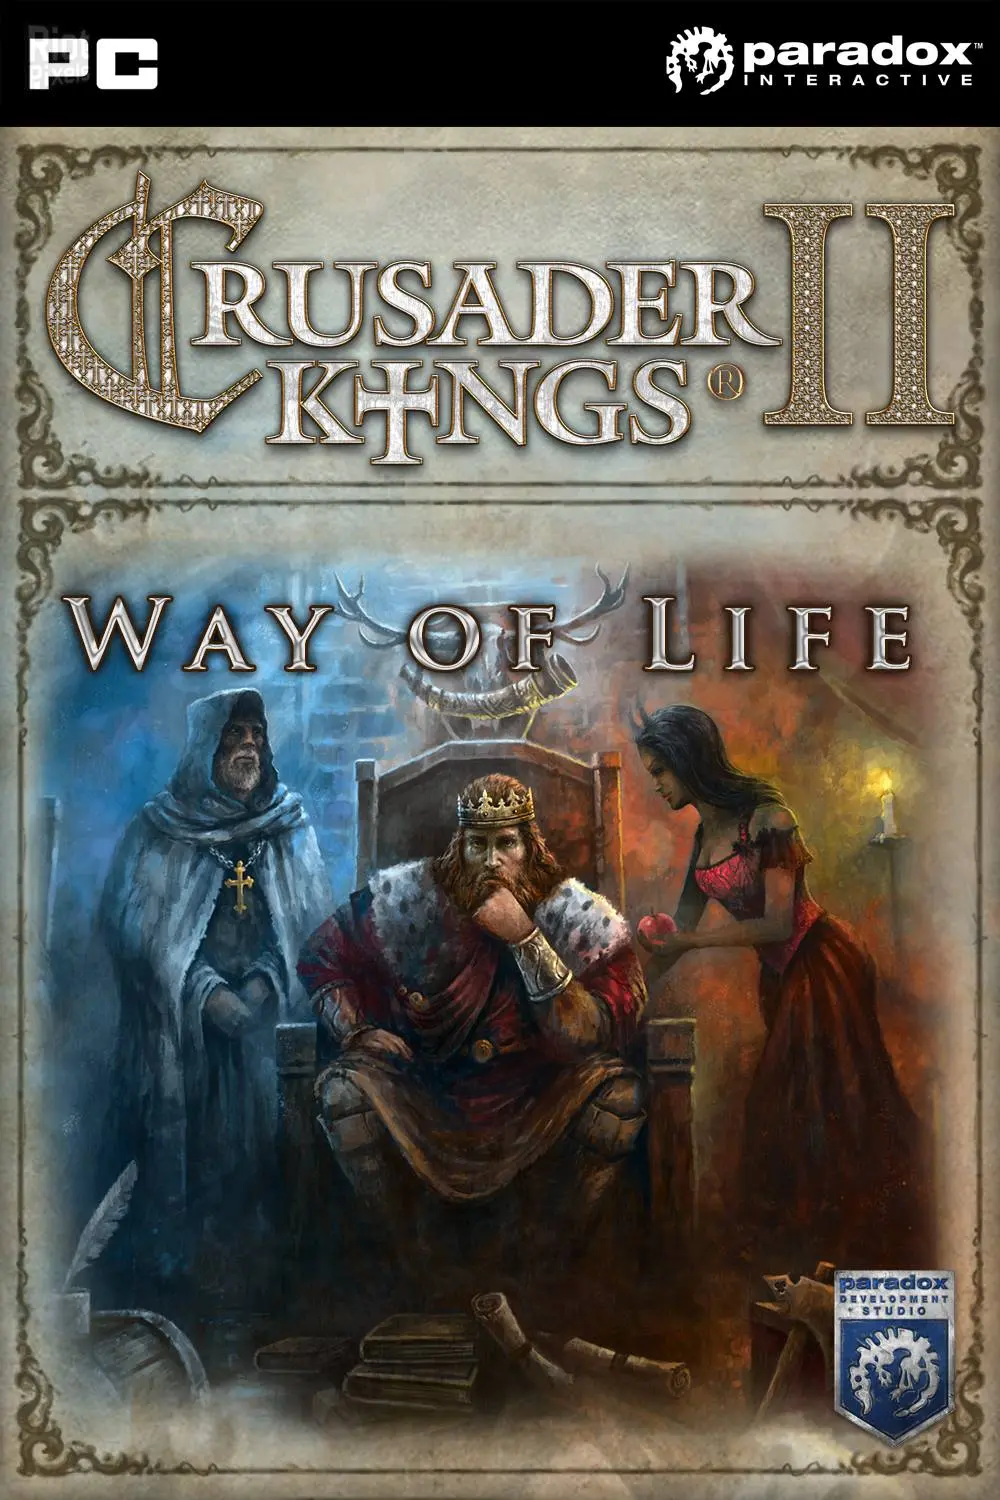 Crusader Kings II - Way of Life DLC (PC) - Steam - Digital Code